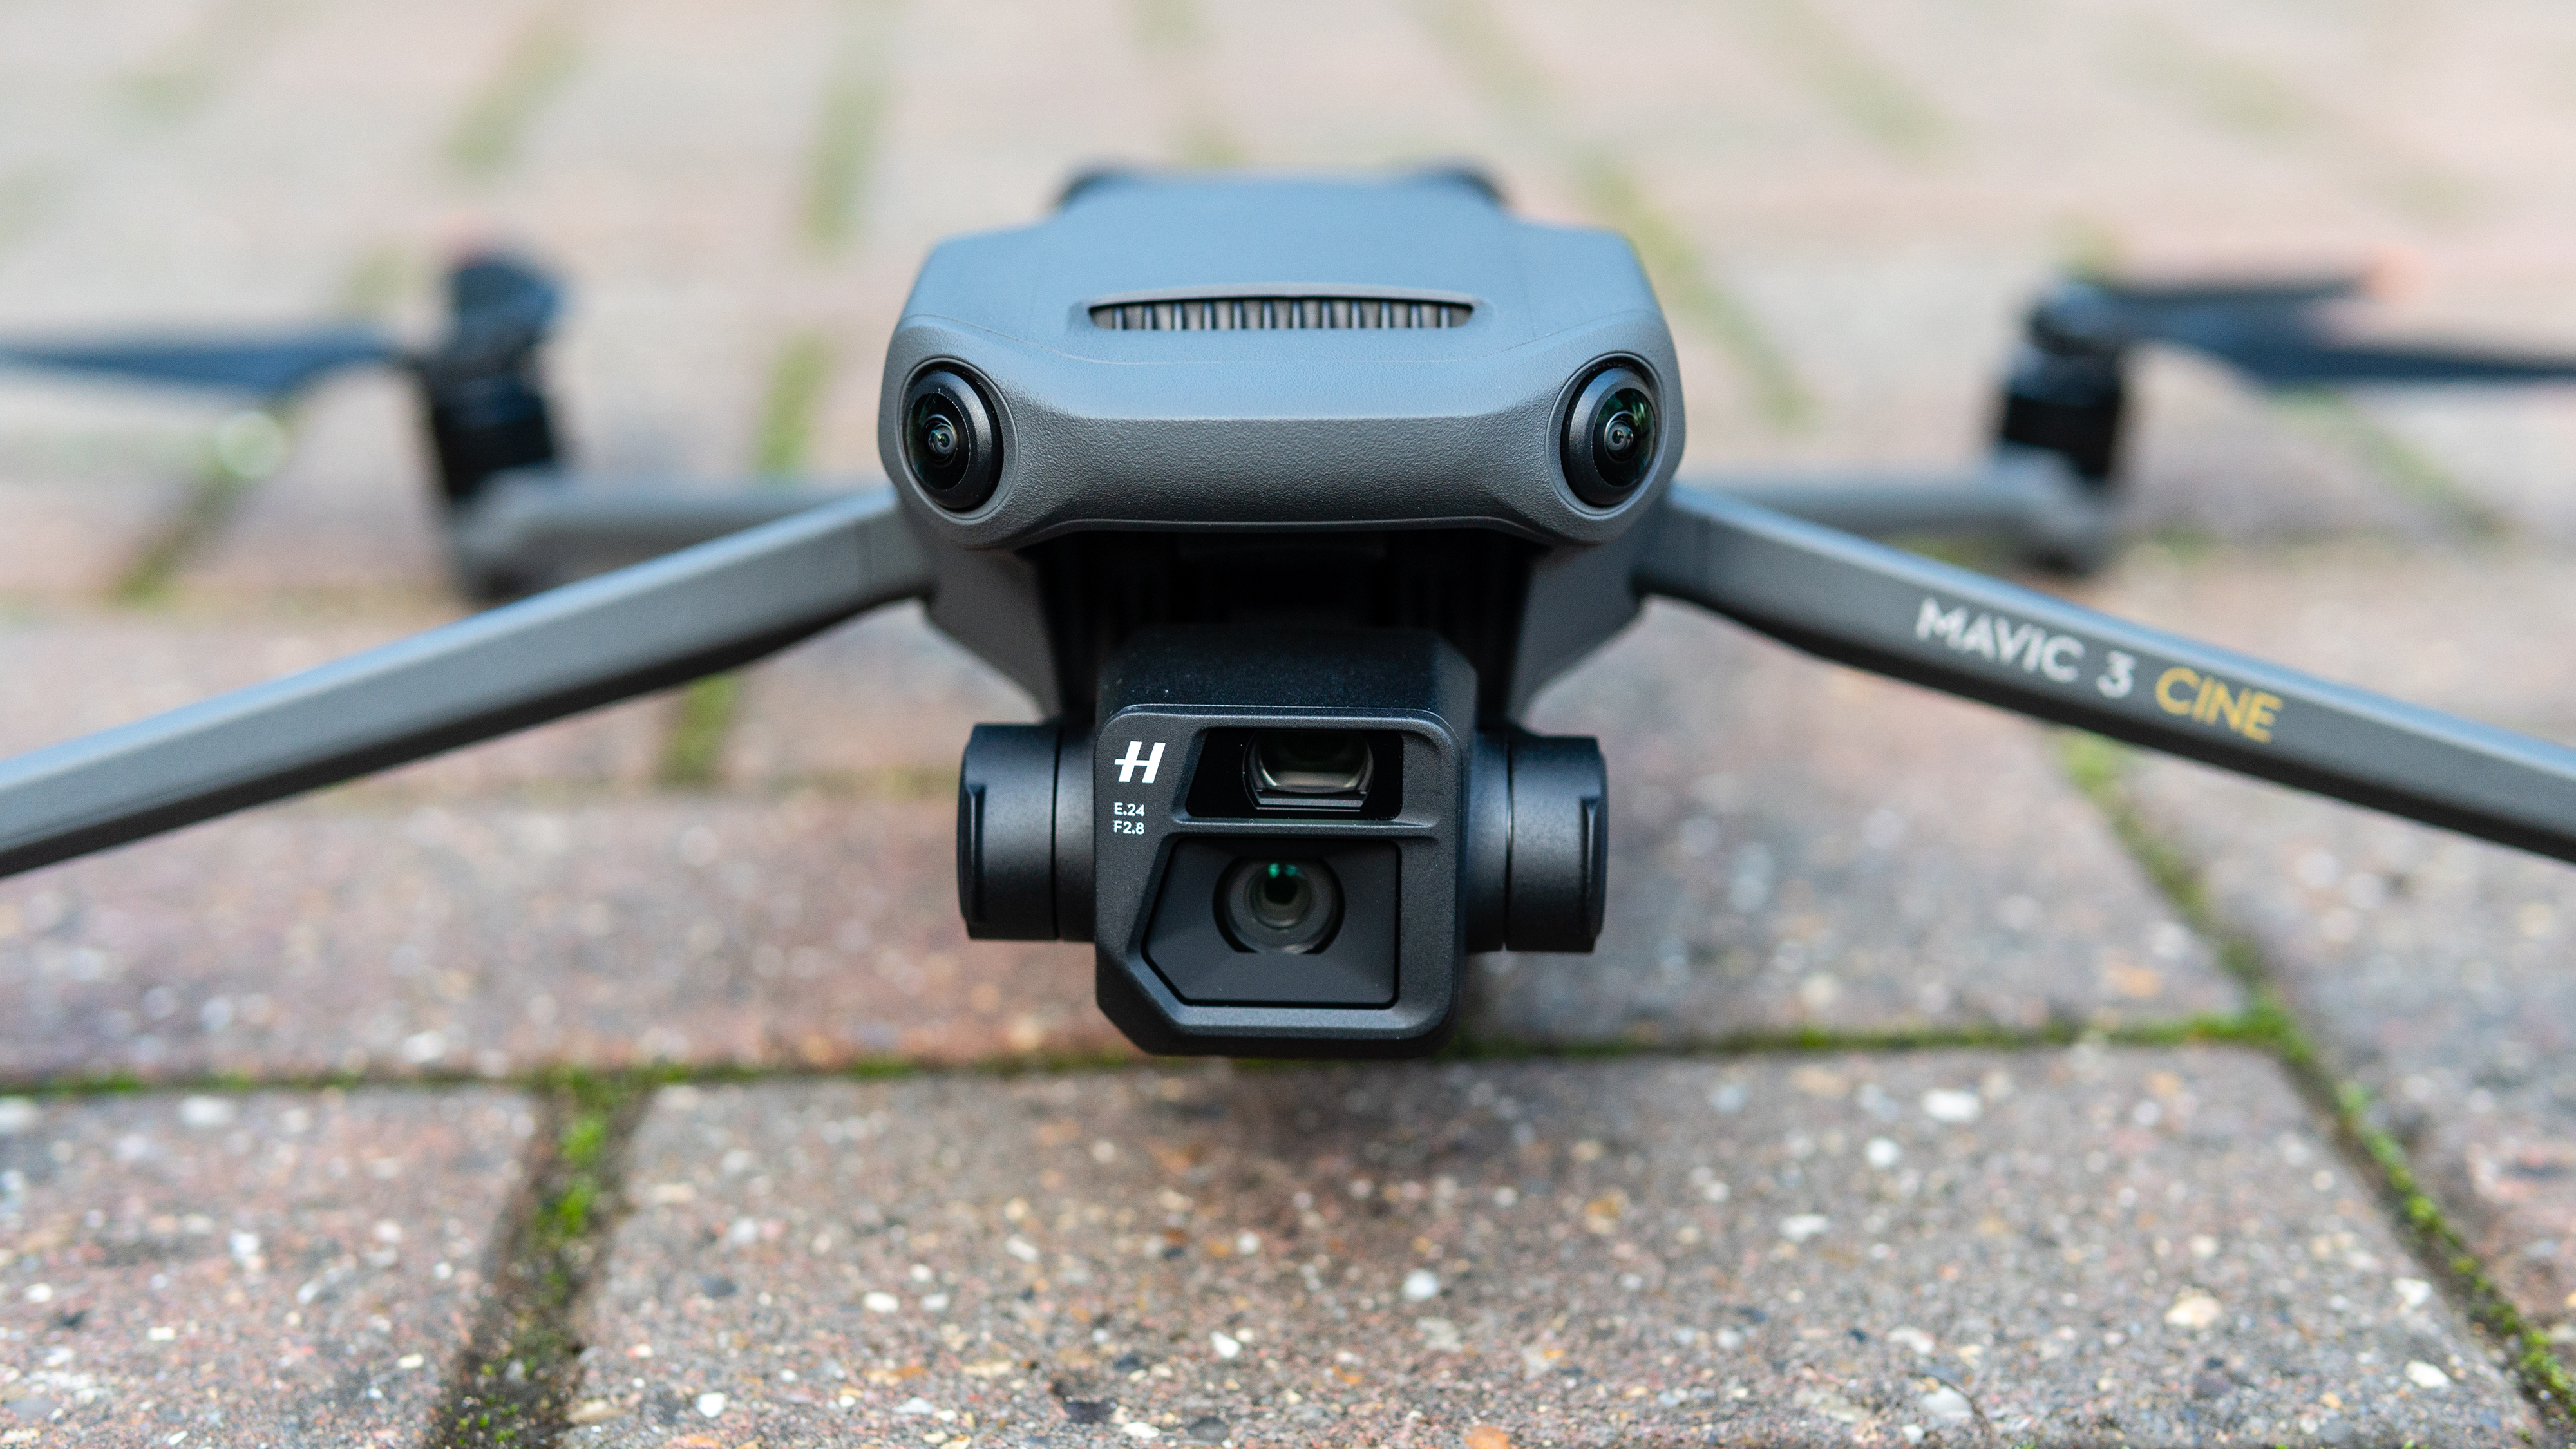 The DJI Mavic 3 drone's front camera